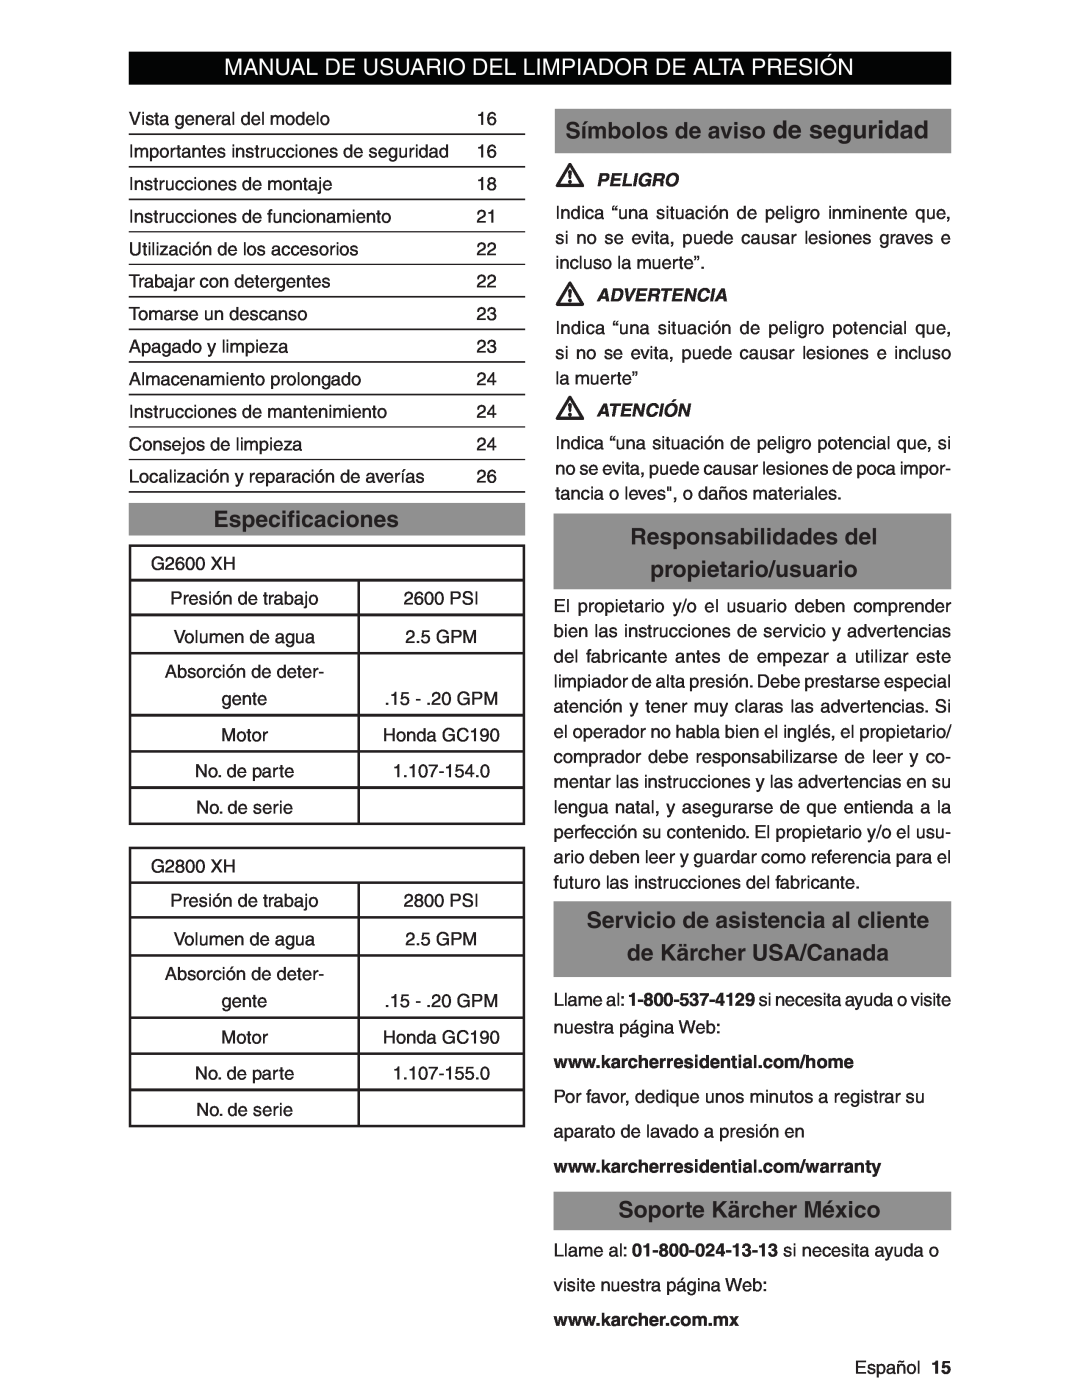 Karcher G2600XH Manual De Usuario Del Limpiador De Alta Presión, Símbolos de aviso de seguridad, Especiﬁcaciones, Peligro 